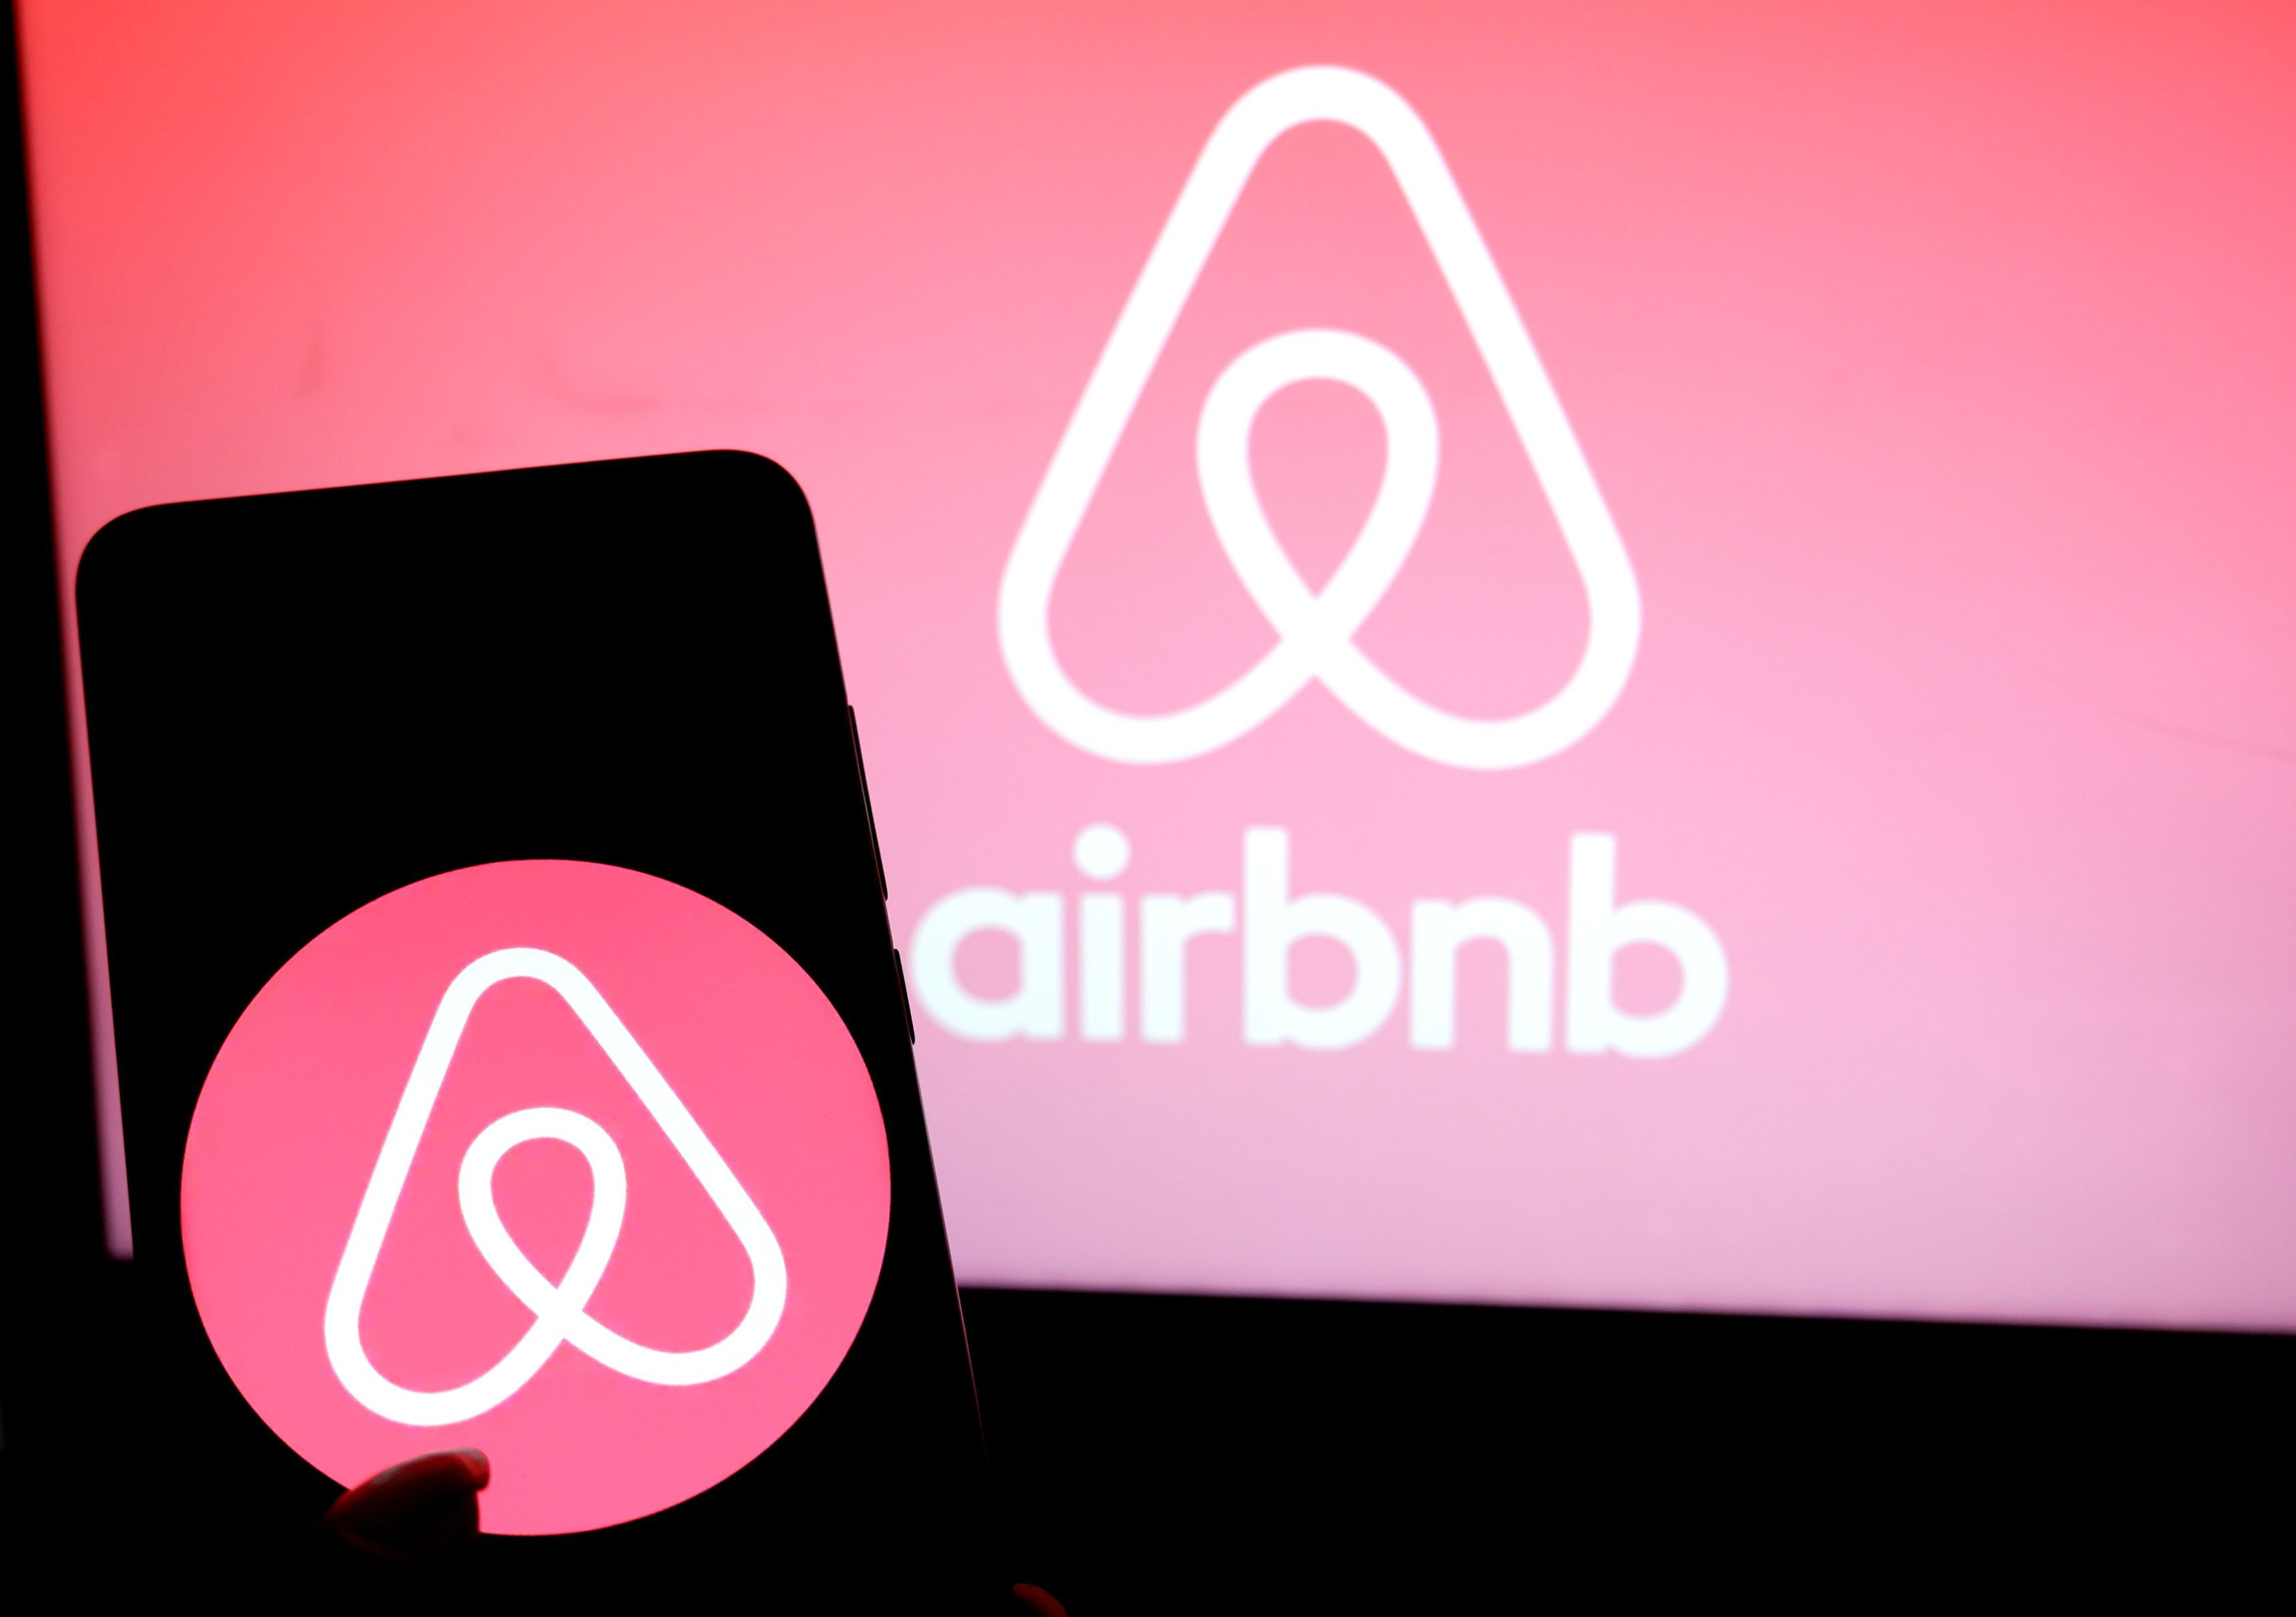 Pandemia de COVID împinge o listare surpriză: Airbnb a depus tacit documentele pentru listarea pe bursă în SUA  